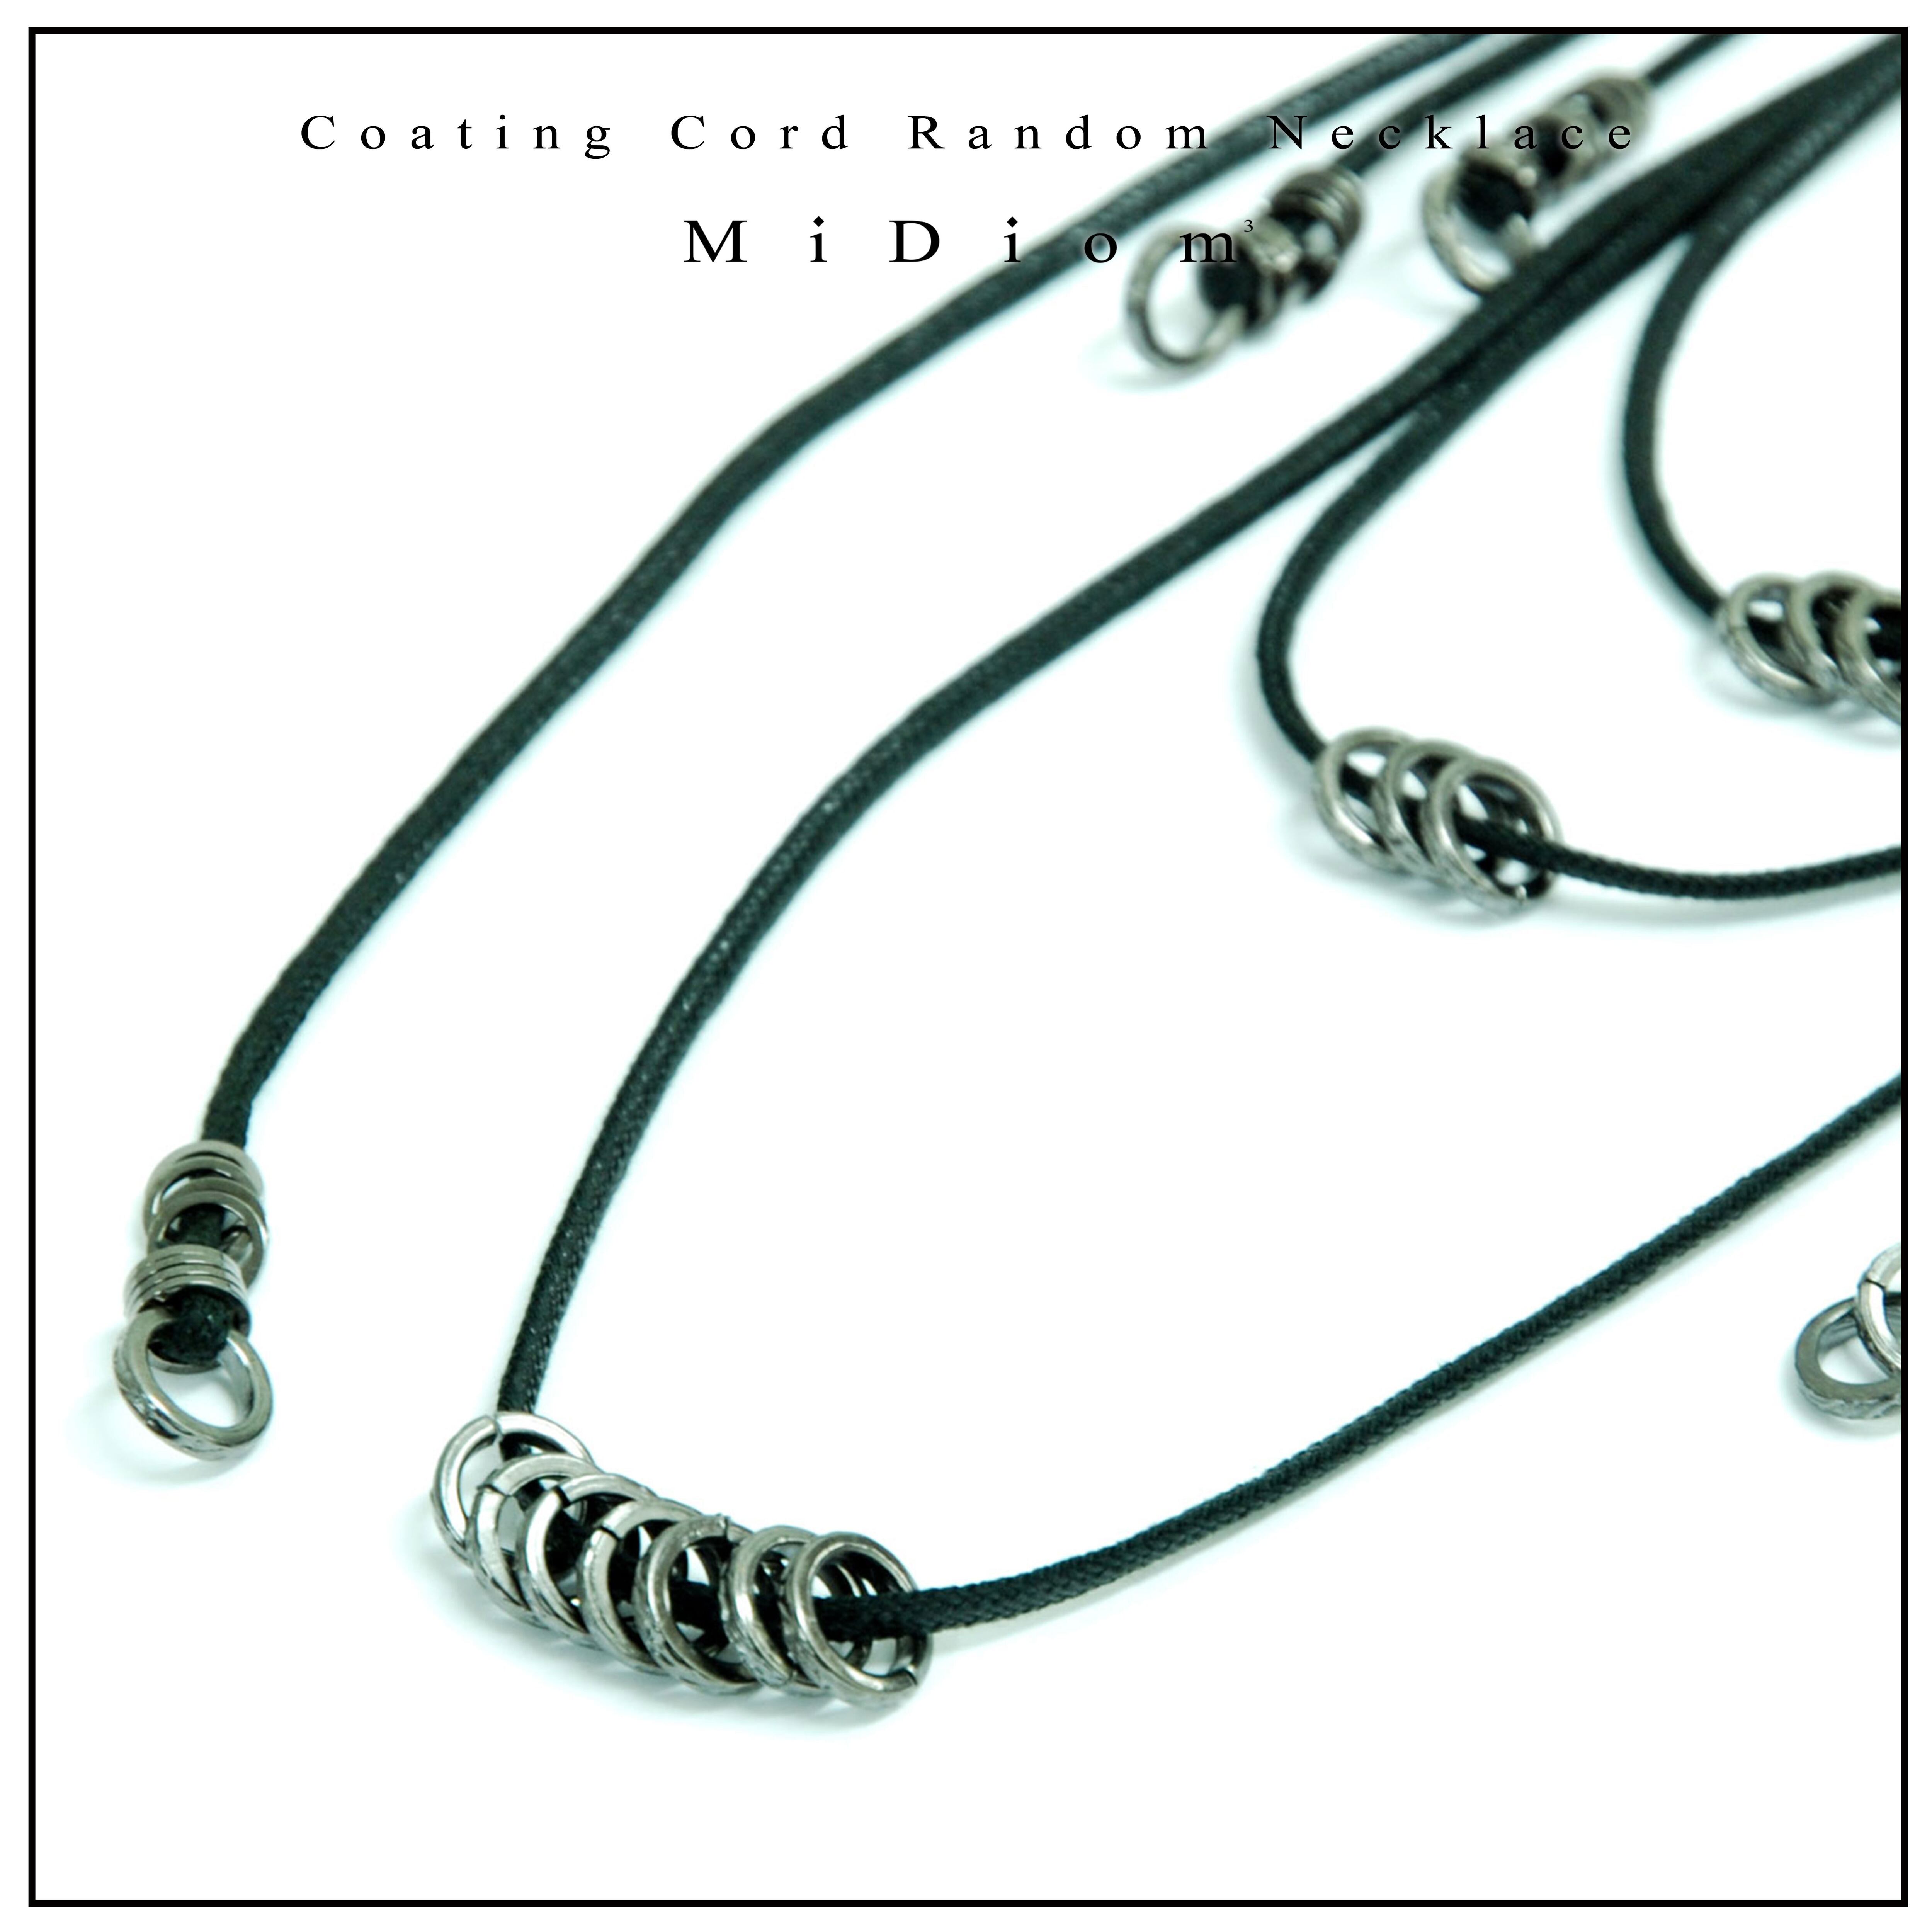 【MiDiom】Coating Cord Random Necklace